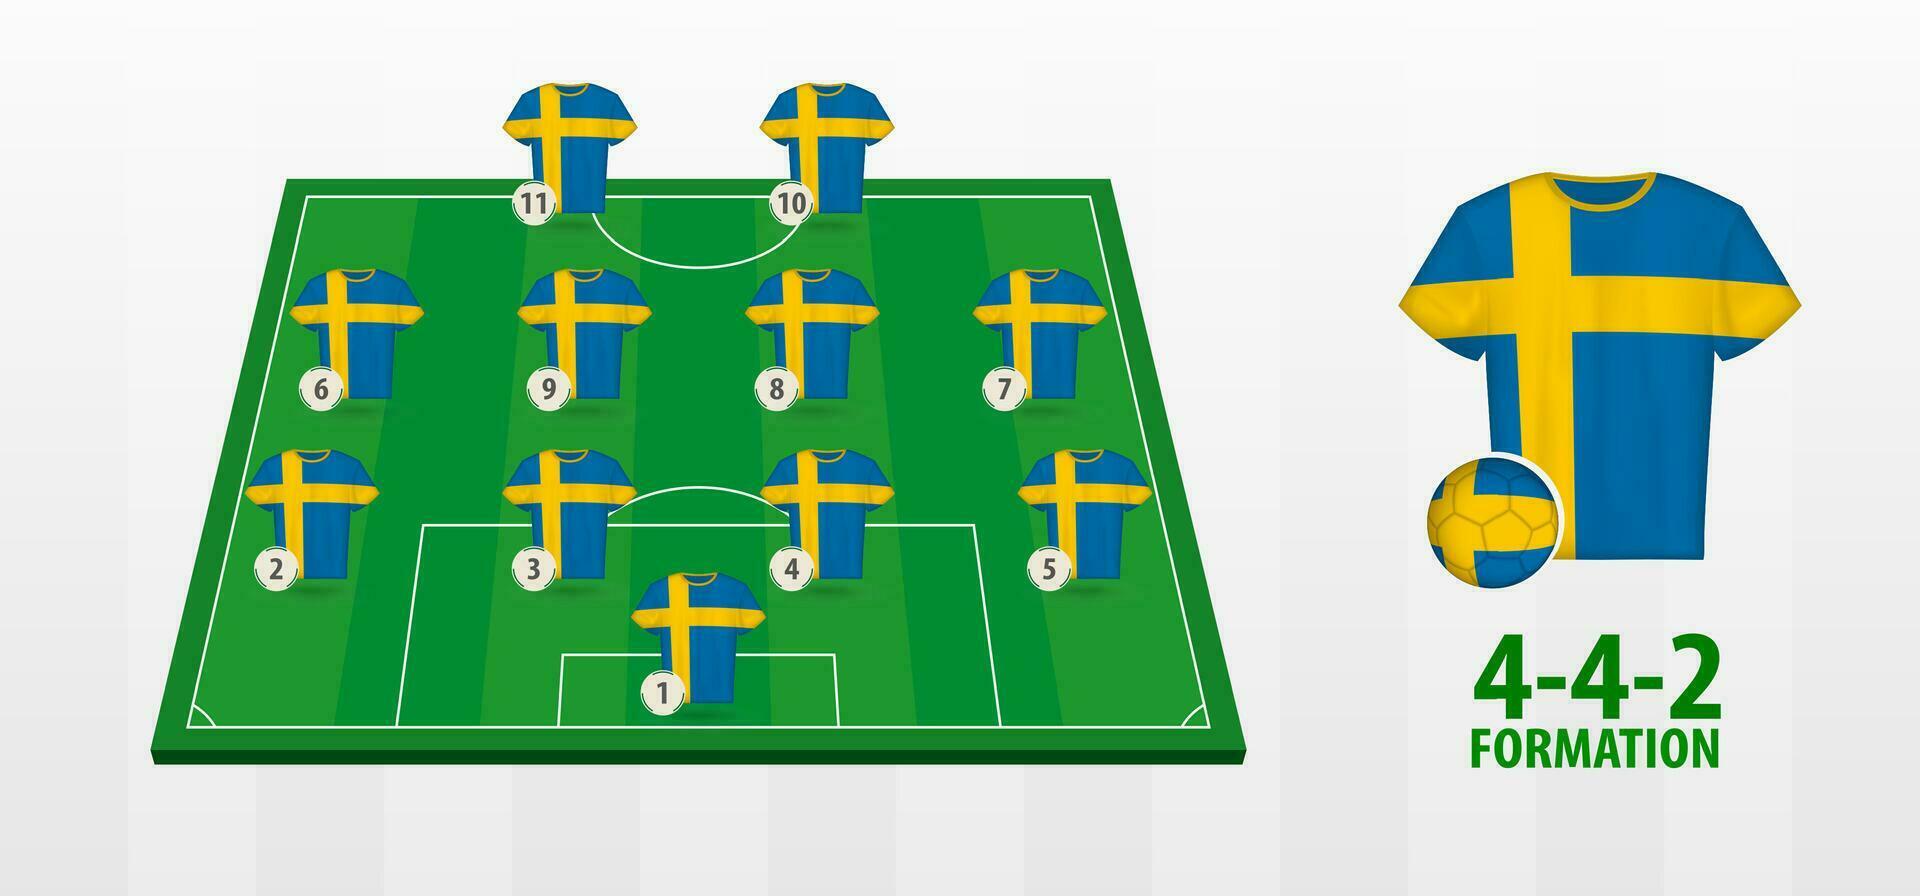 Sverige nationell fotboll team bildning på fotboll fält. vektor